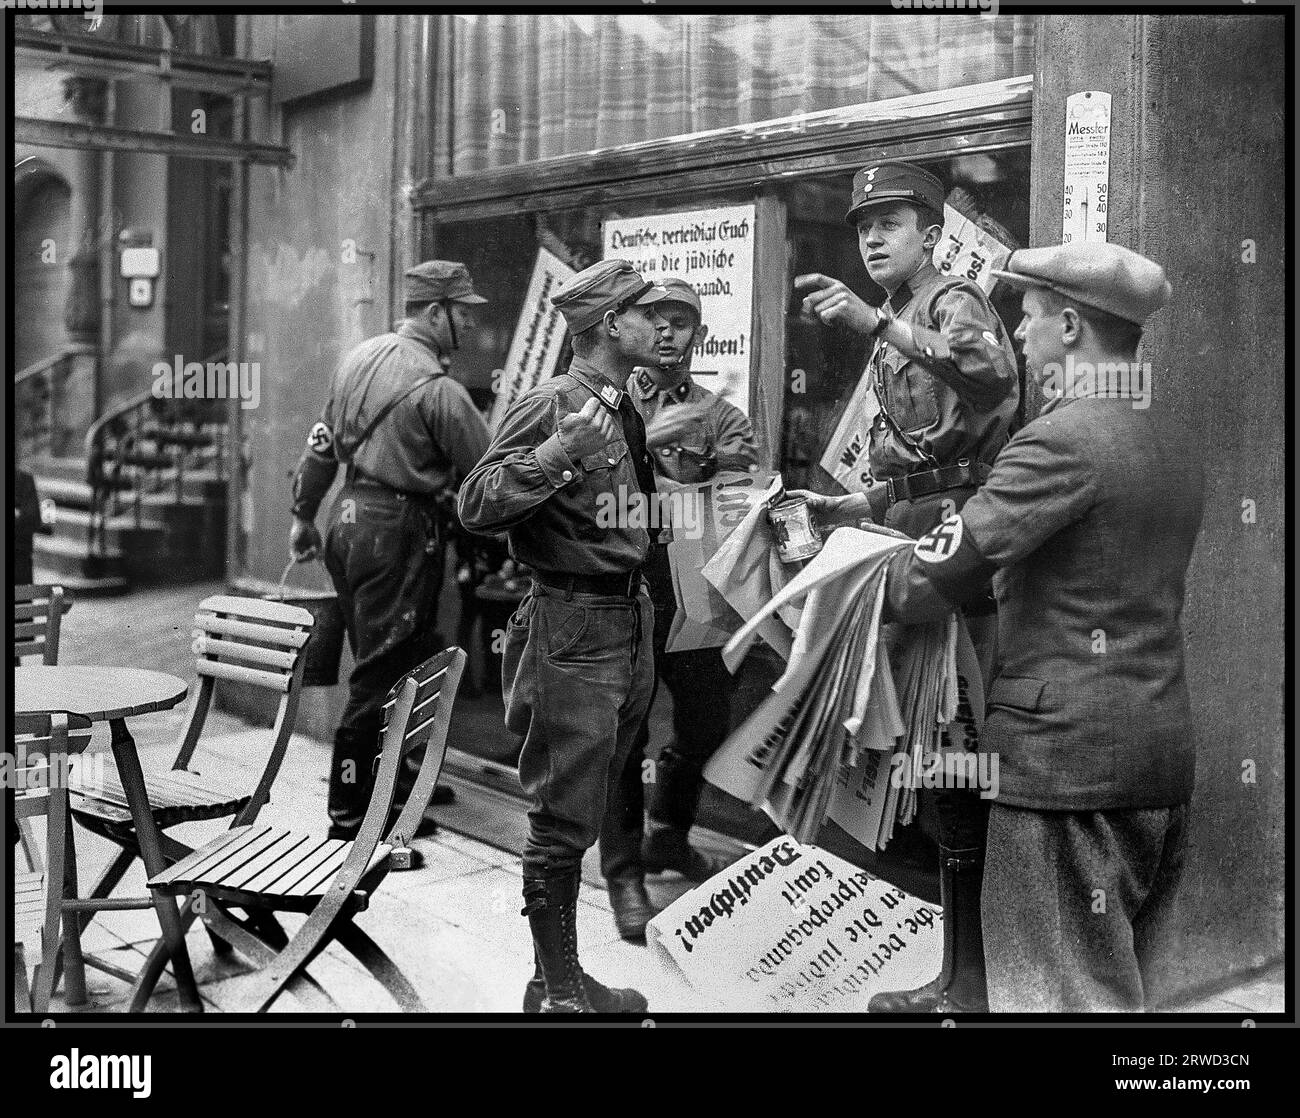 BOICOTTARE la Germania nazista i negozi ebraici degli anni '1930 boicottare, con i poliziotti paramilitari in uniforme Sturmabteilung che indossano braccioli svastici garantendo il divieto di boicottare i negozi ebraici pubblicando manifesti antisemiti antiebraici a Berlino nella Germania nazista Foto Stock